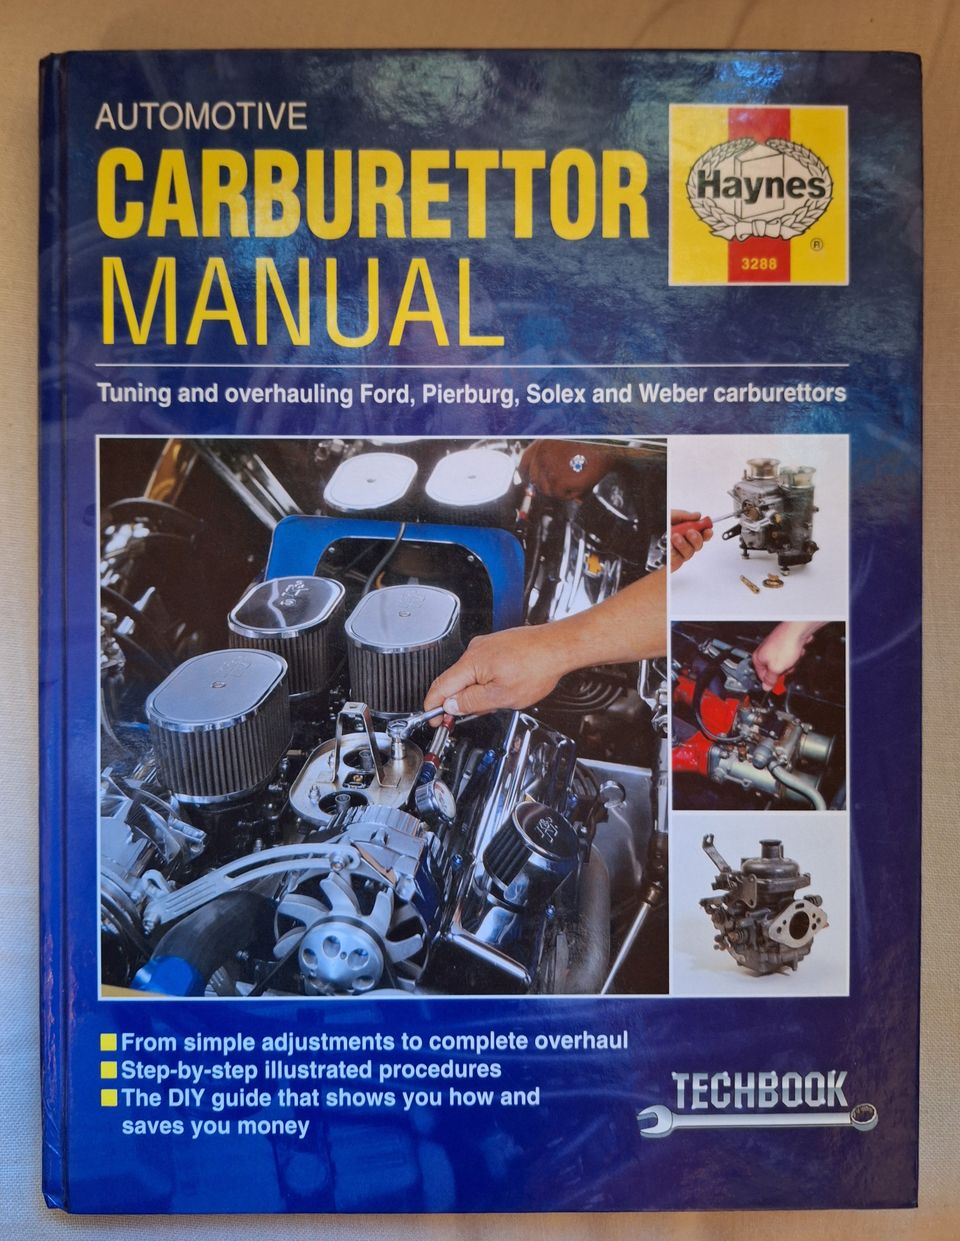 Kaasutin käsikirja: Automotive Carburettor Manual